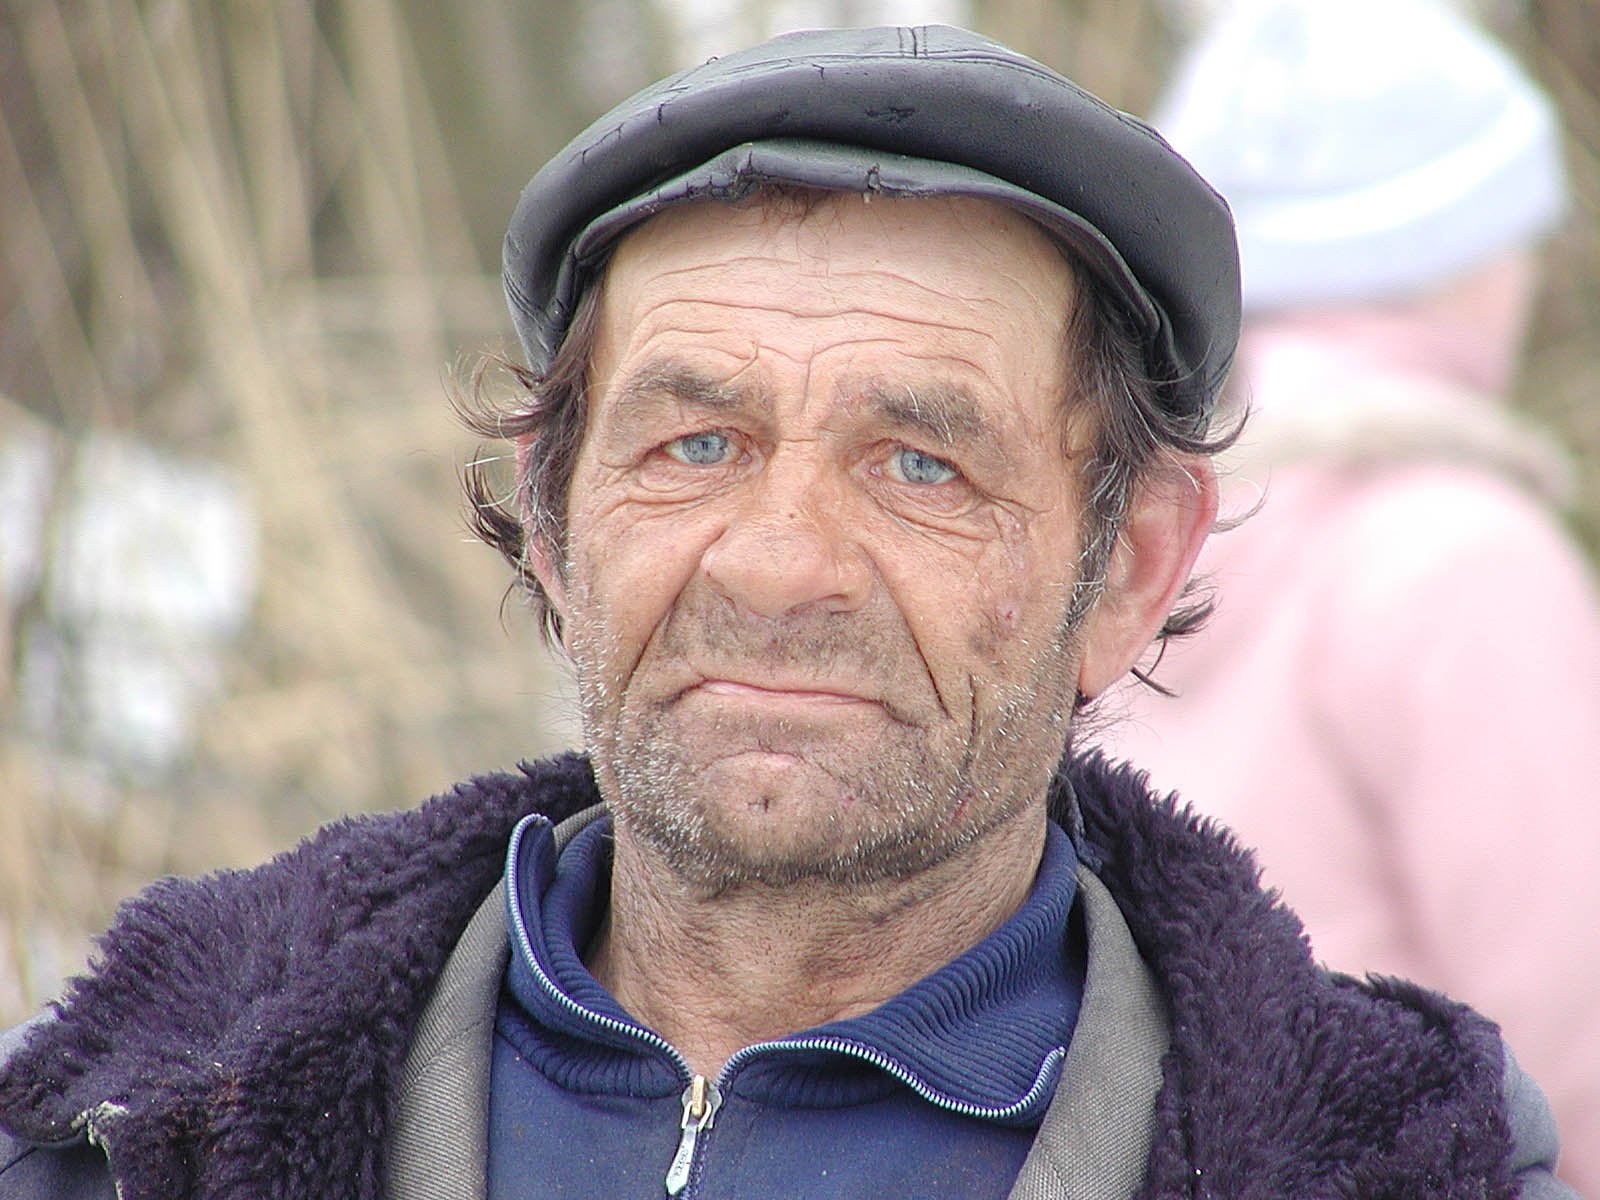 Ава бомжа. Бездомный старик. Портрет пожилого мужчины. Фотопортреты пожилых мужчин.